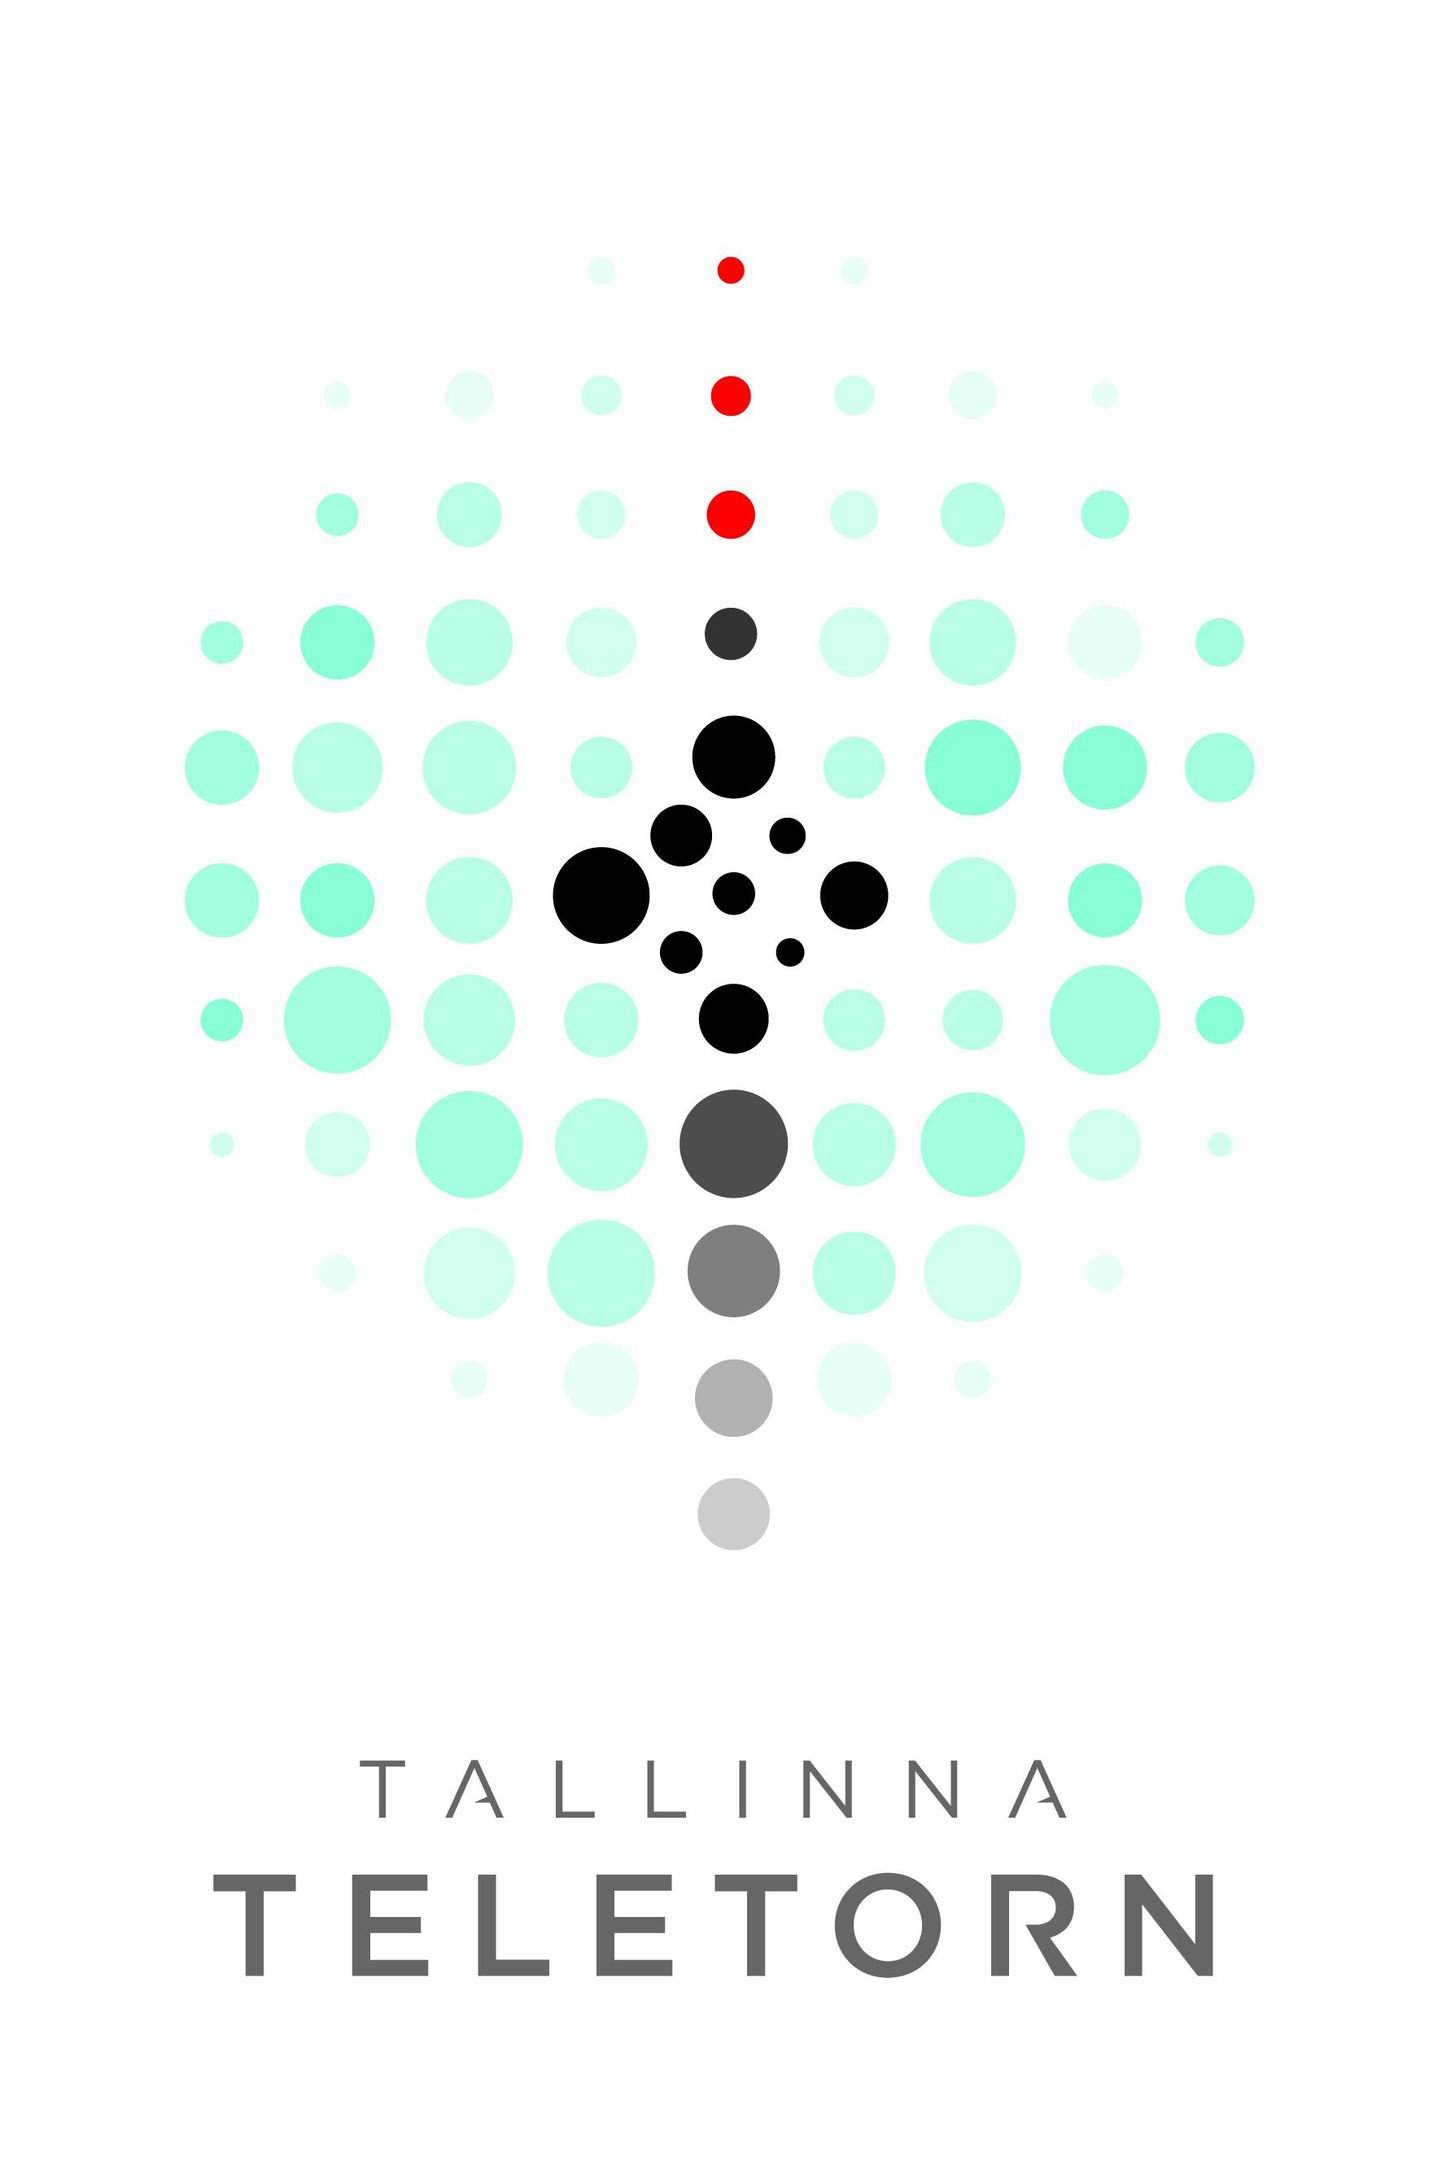 Teletorni uus logo